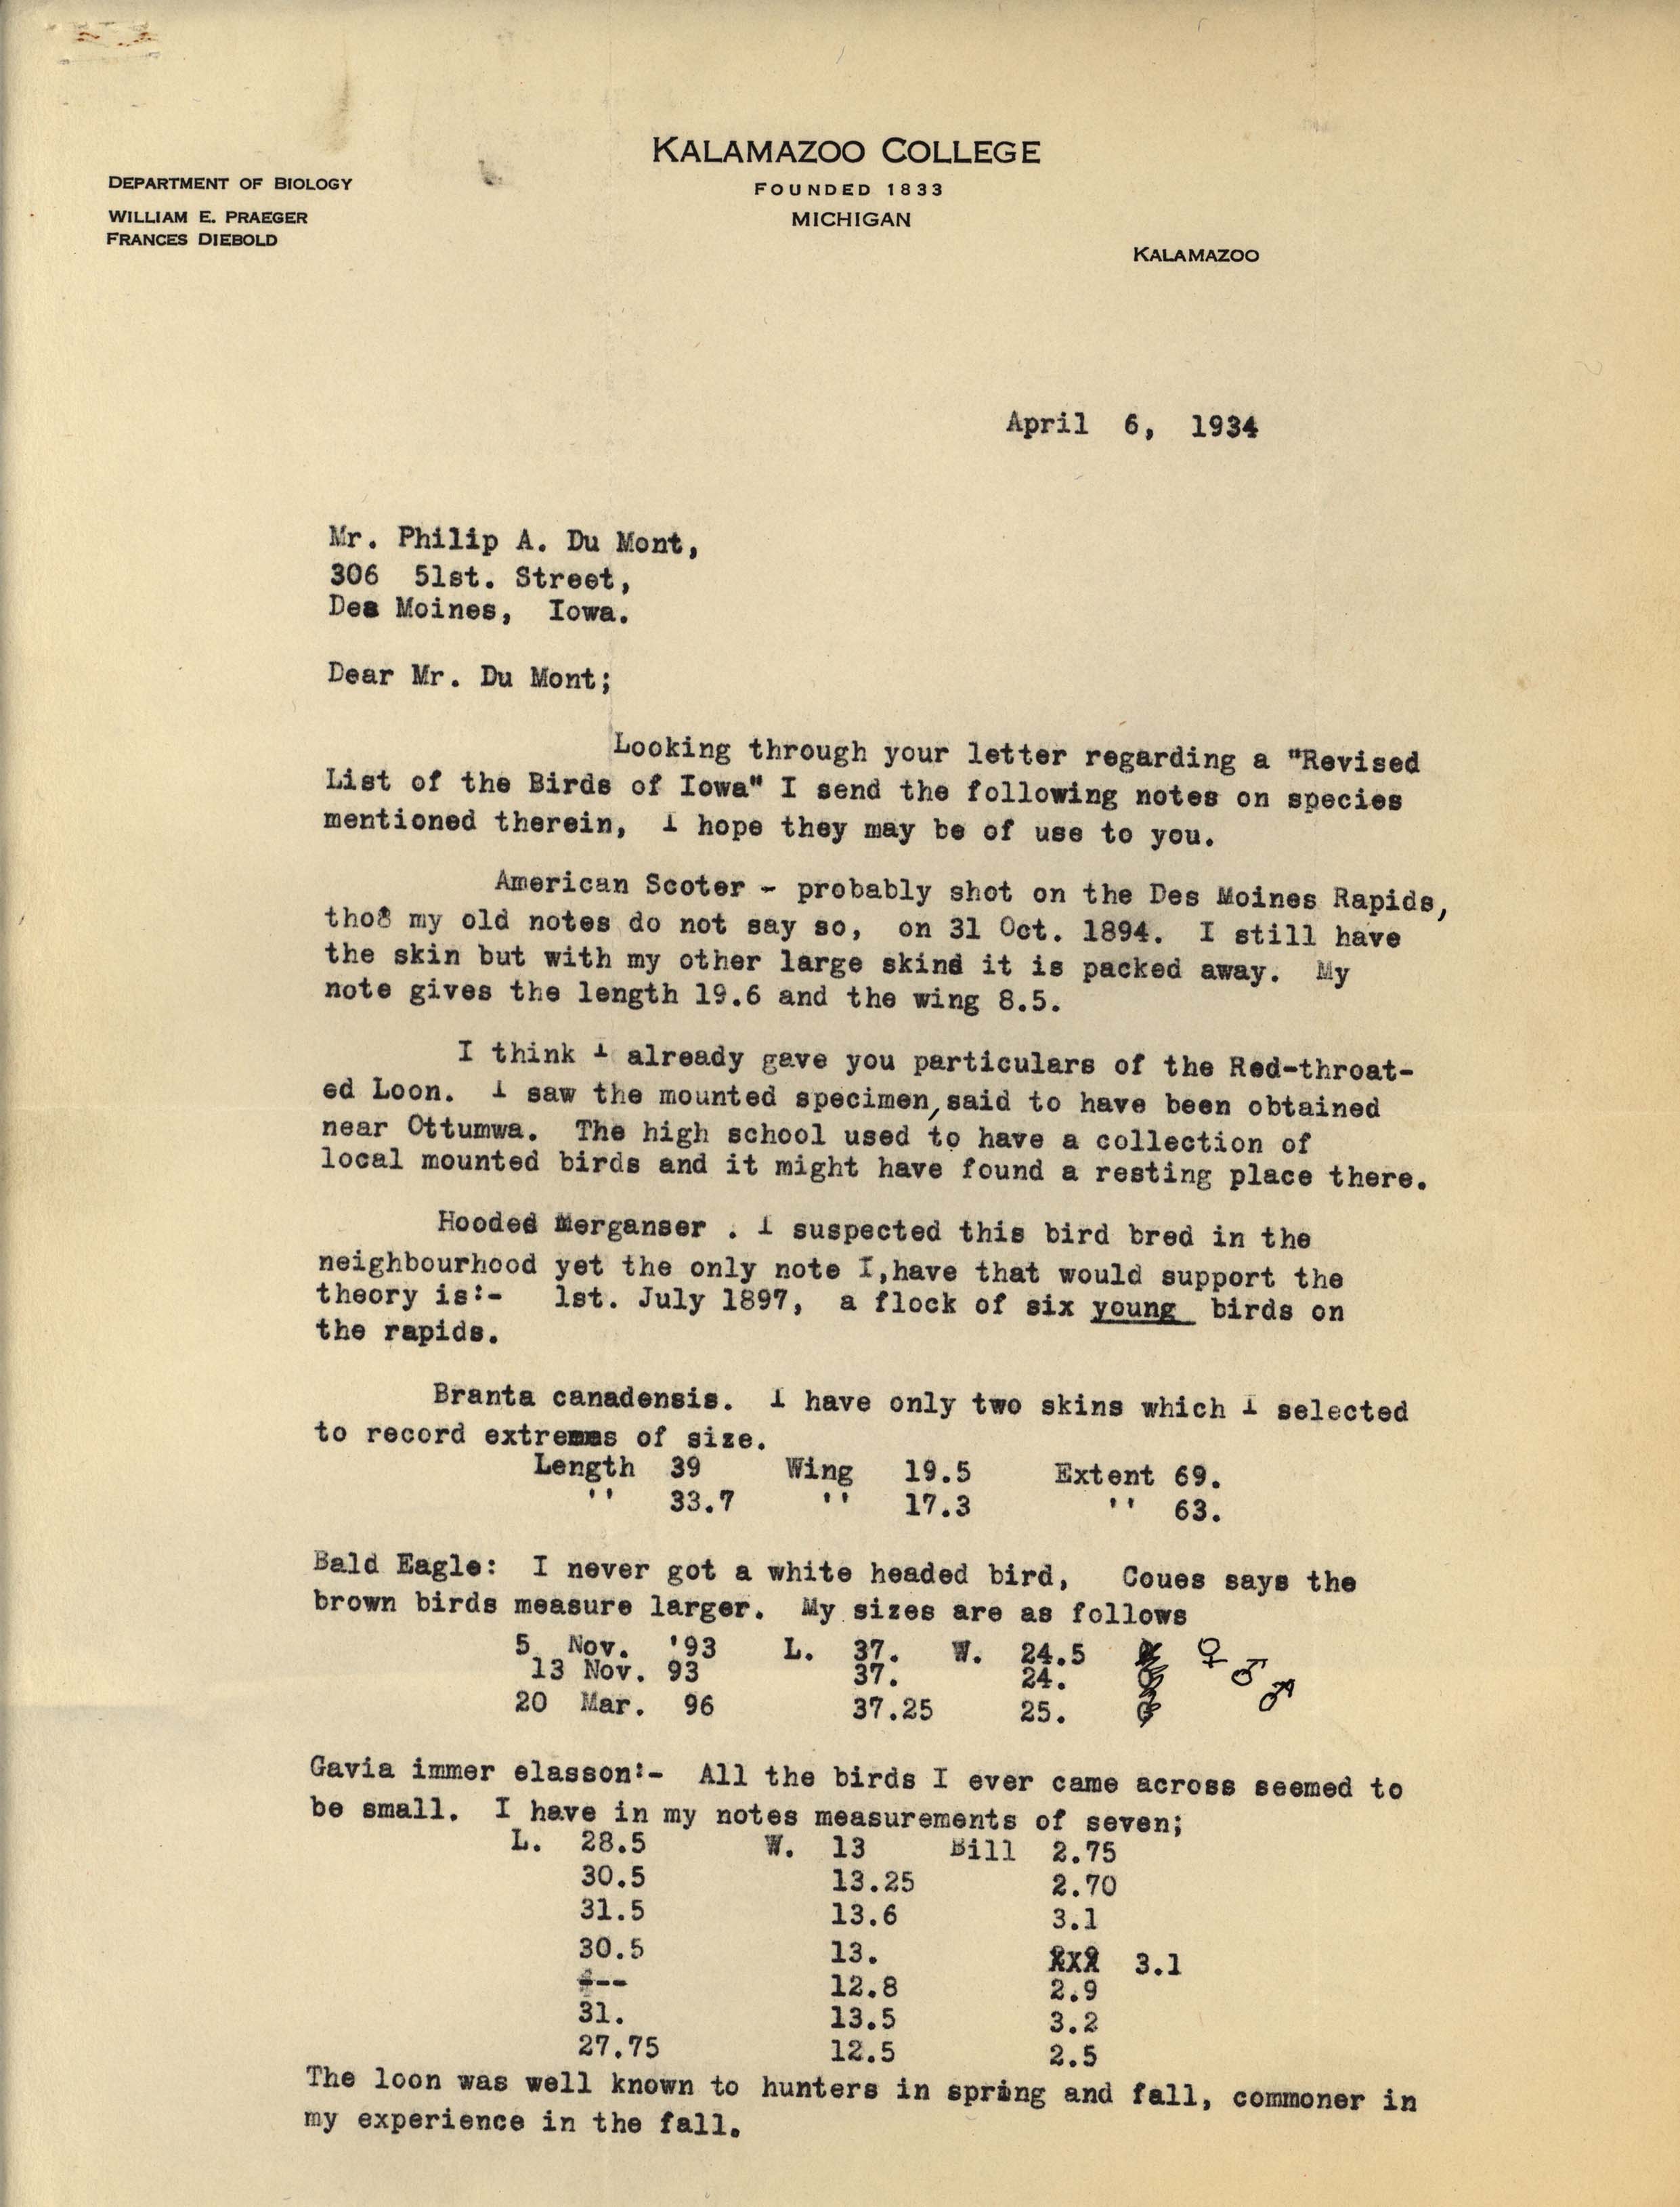 William Praeger letter to Philip DuMont regarding bird specimens, April 6, 1934